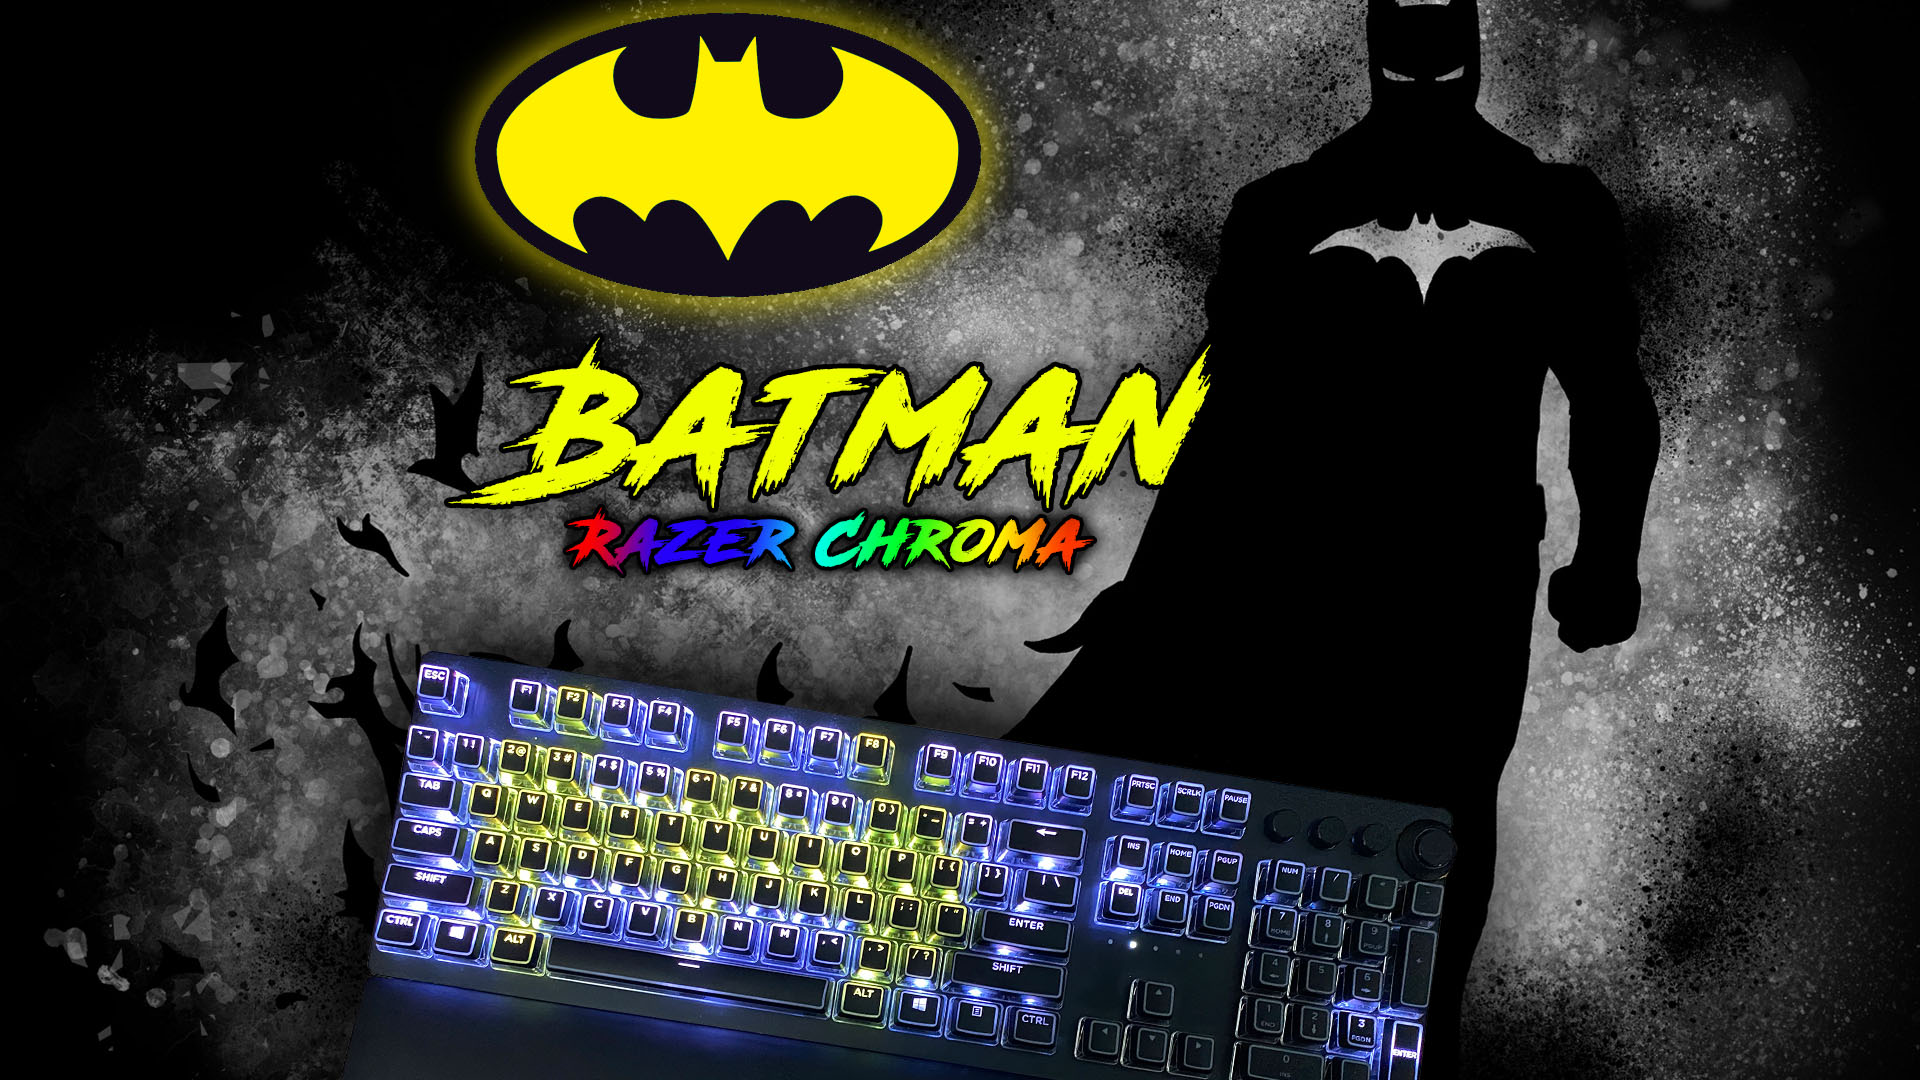 Batman Razer Chroma Profile – UnrealHero